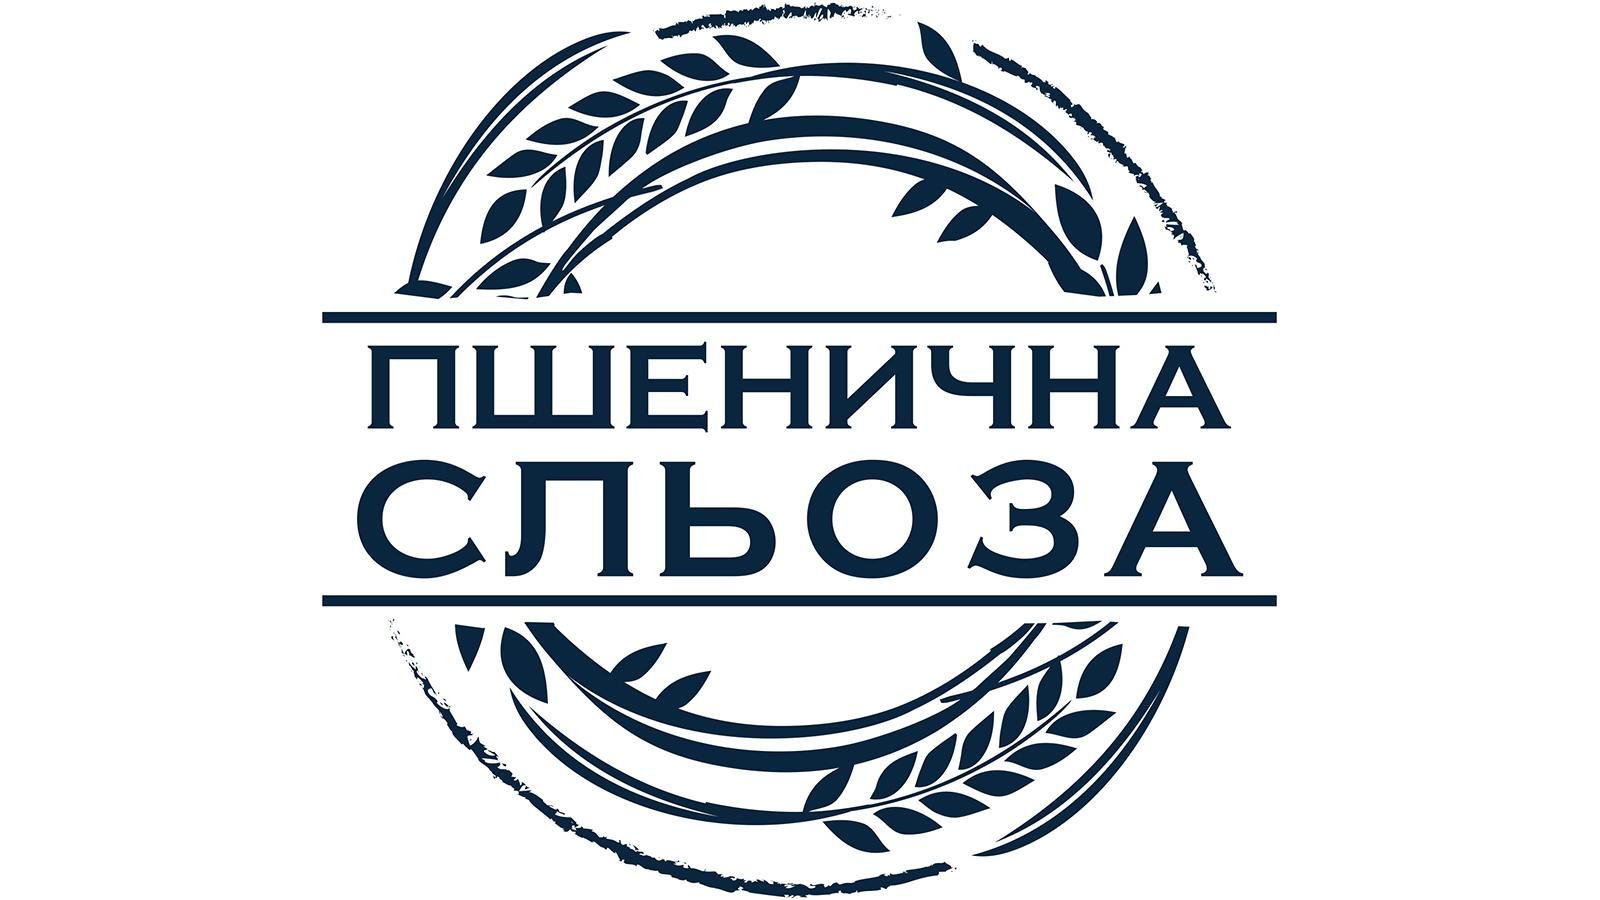 В Україні розпочато випуск горілки на спирті "Пшенична сльоза"